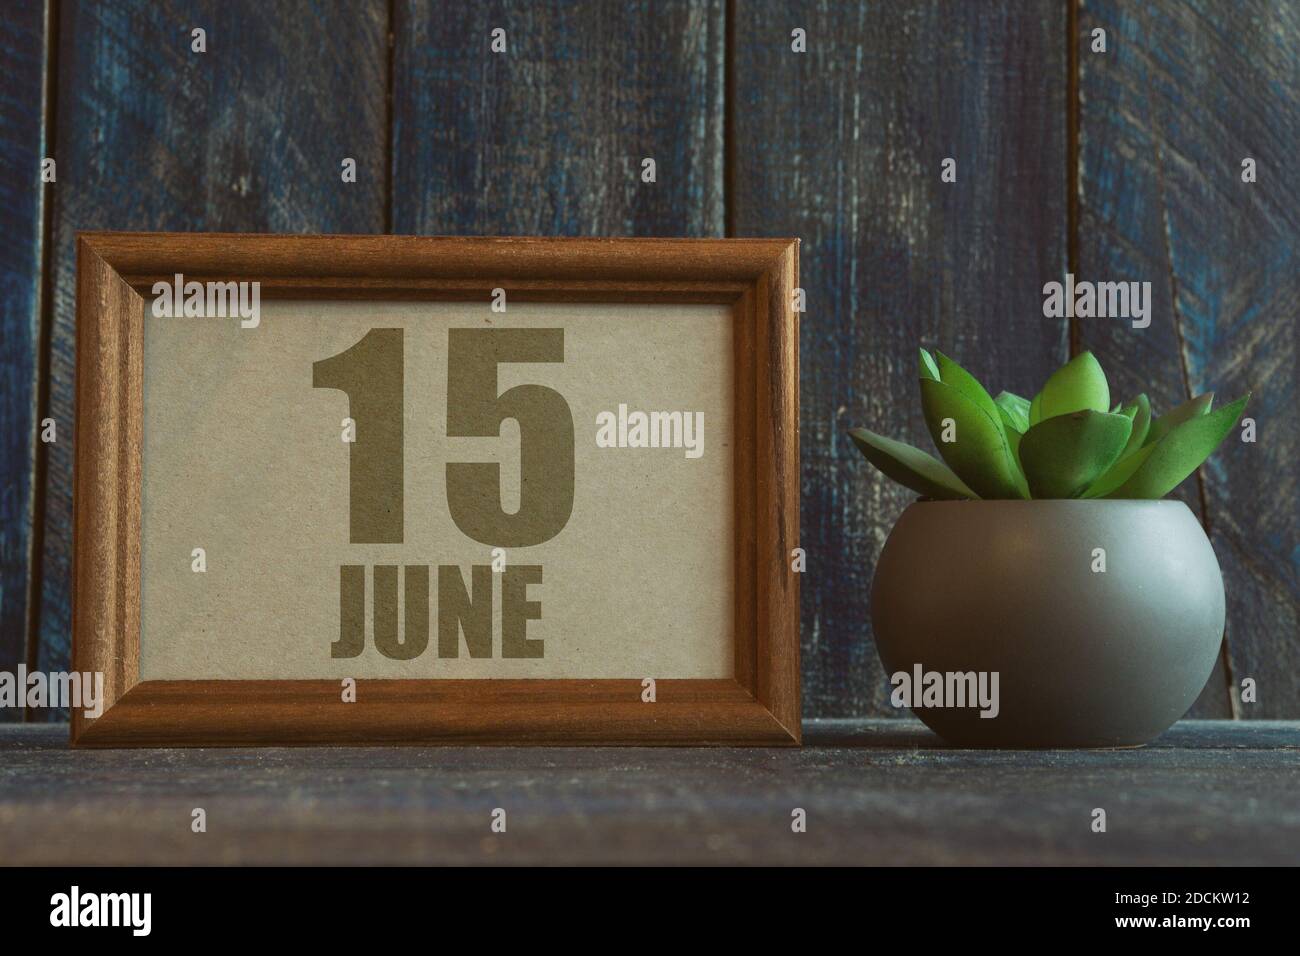 juni. Tag 15 des Monats, Datum im Rahmen neben Sukkulenten auf hölzernen Hintergrund Sommermonat, Tag des Jahres Konzept. Stockfoto